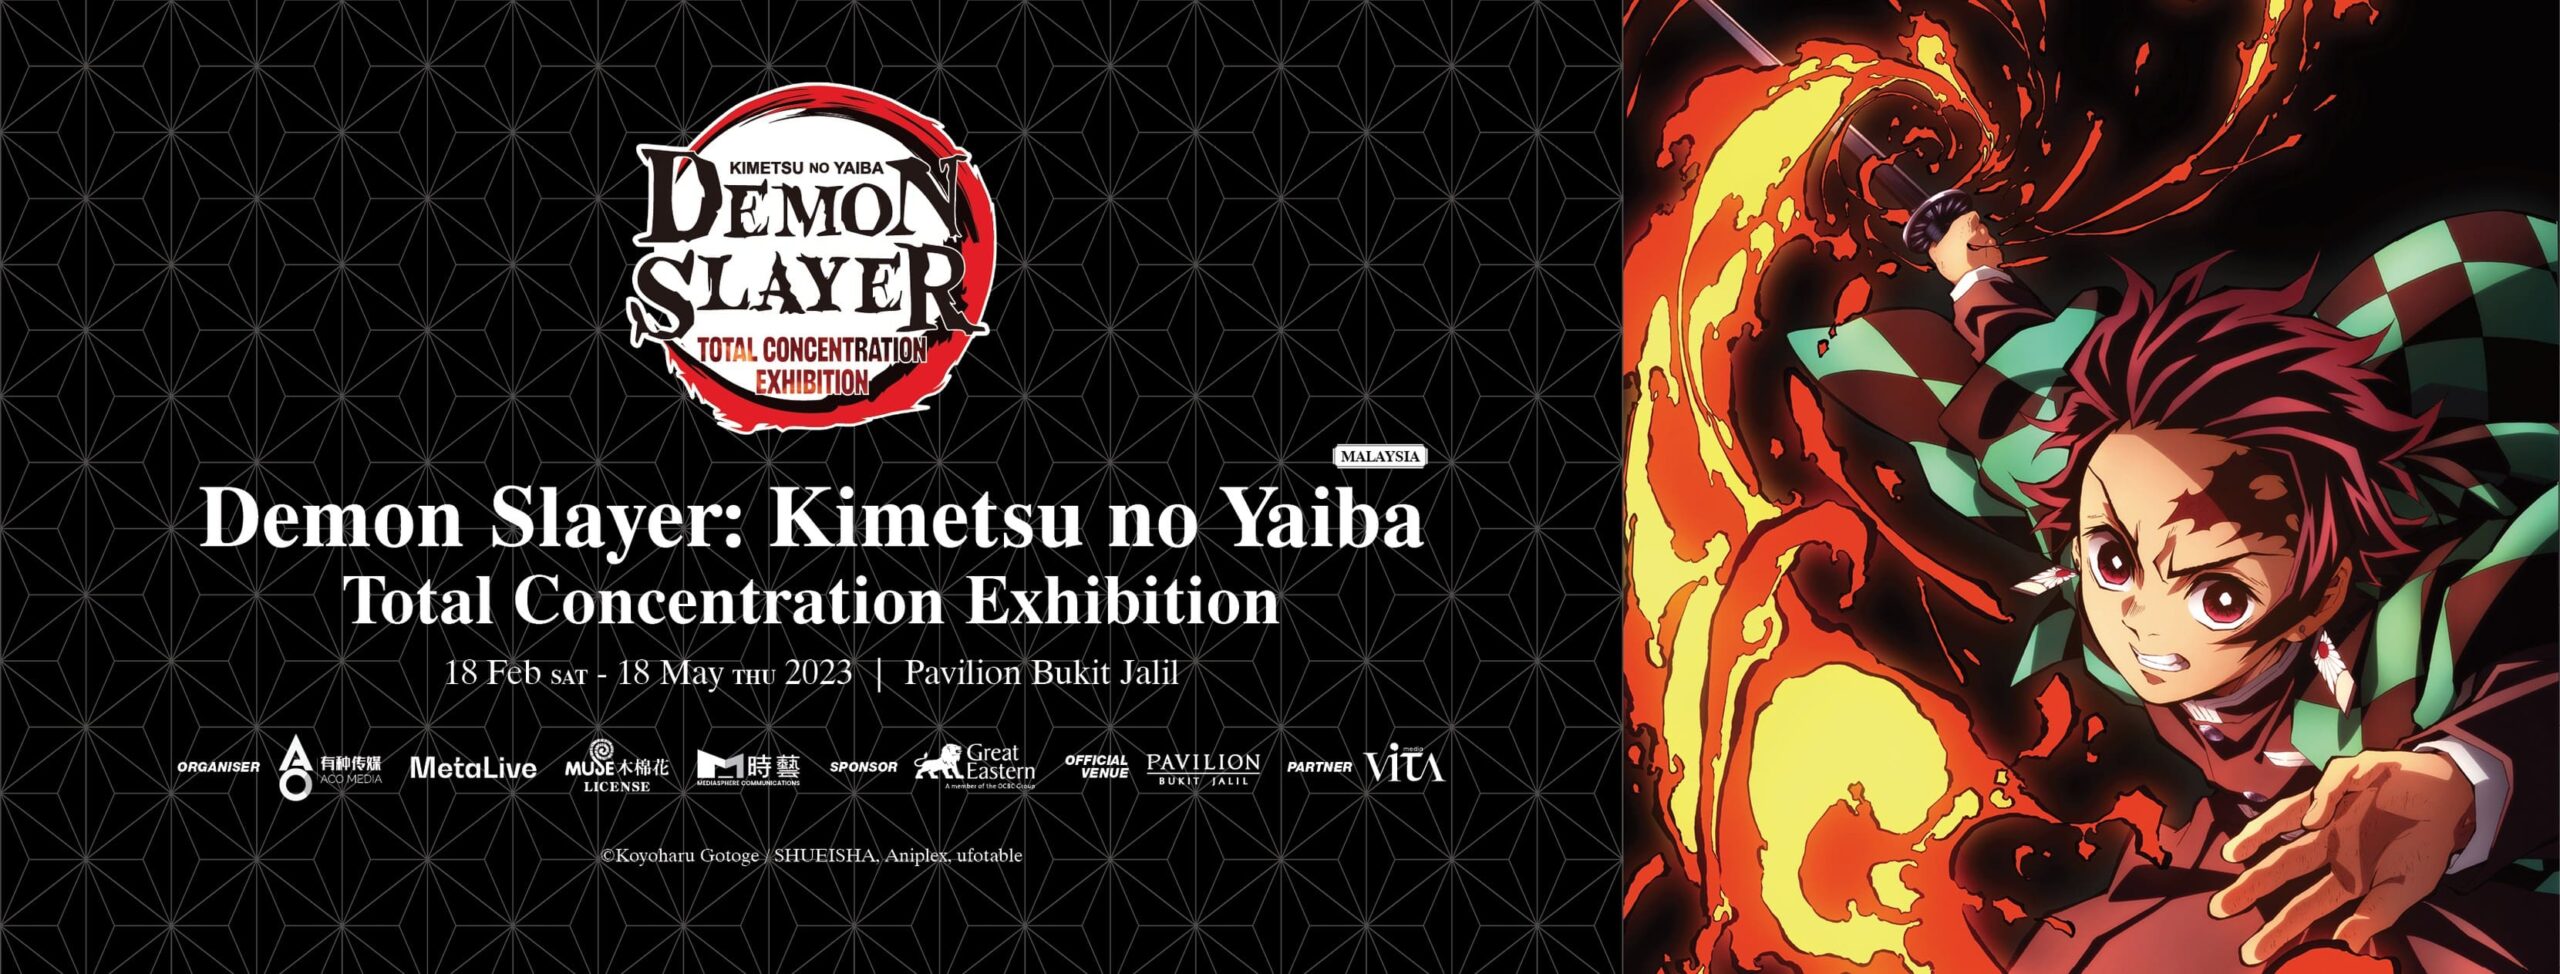 Demon Slayer Kimetsu No Yaiba Total Concentration Exhibition In Malaysia